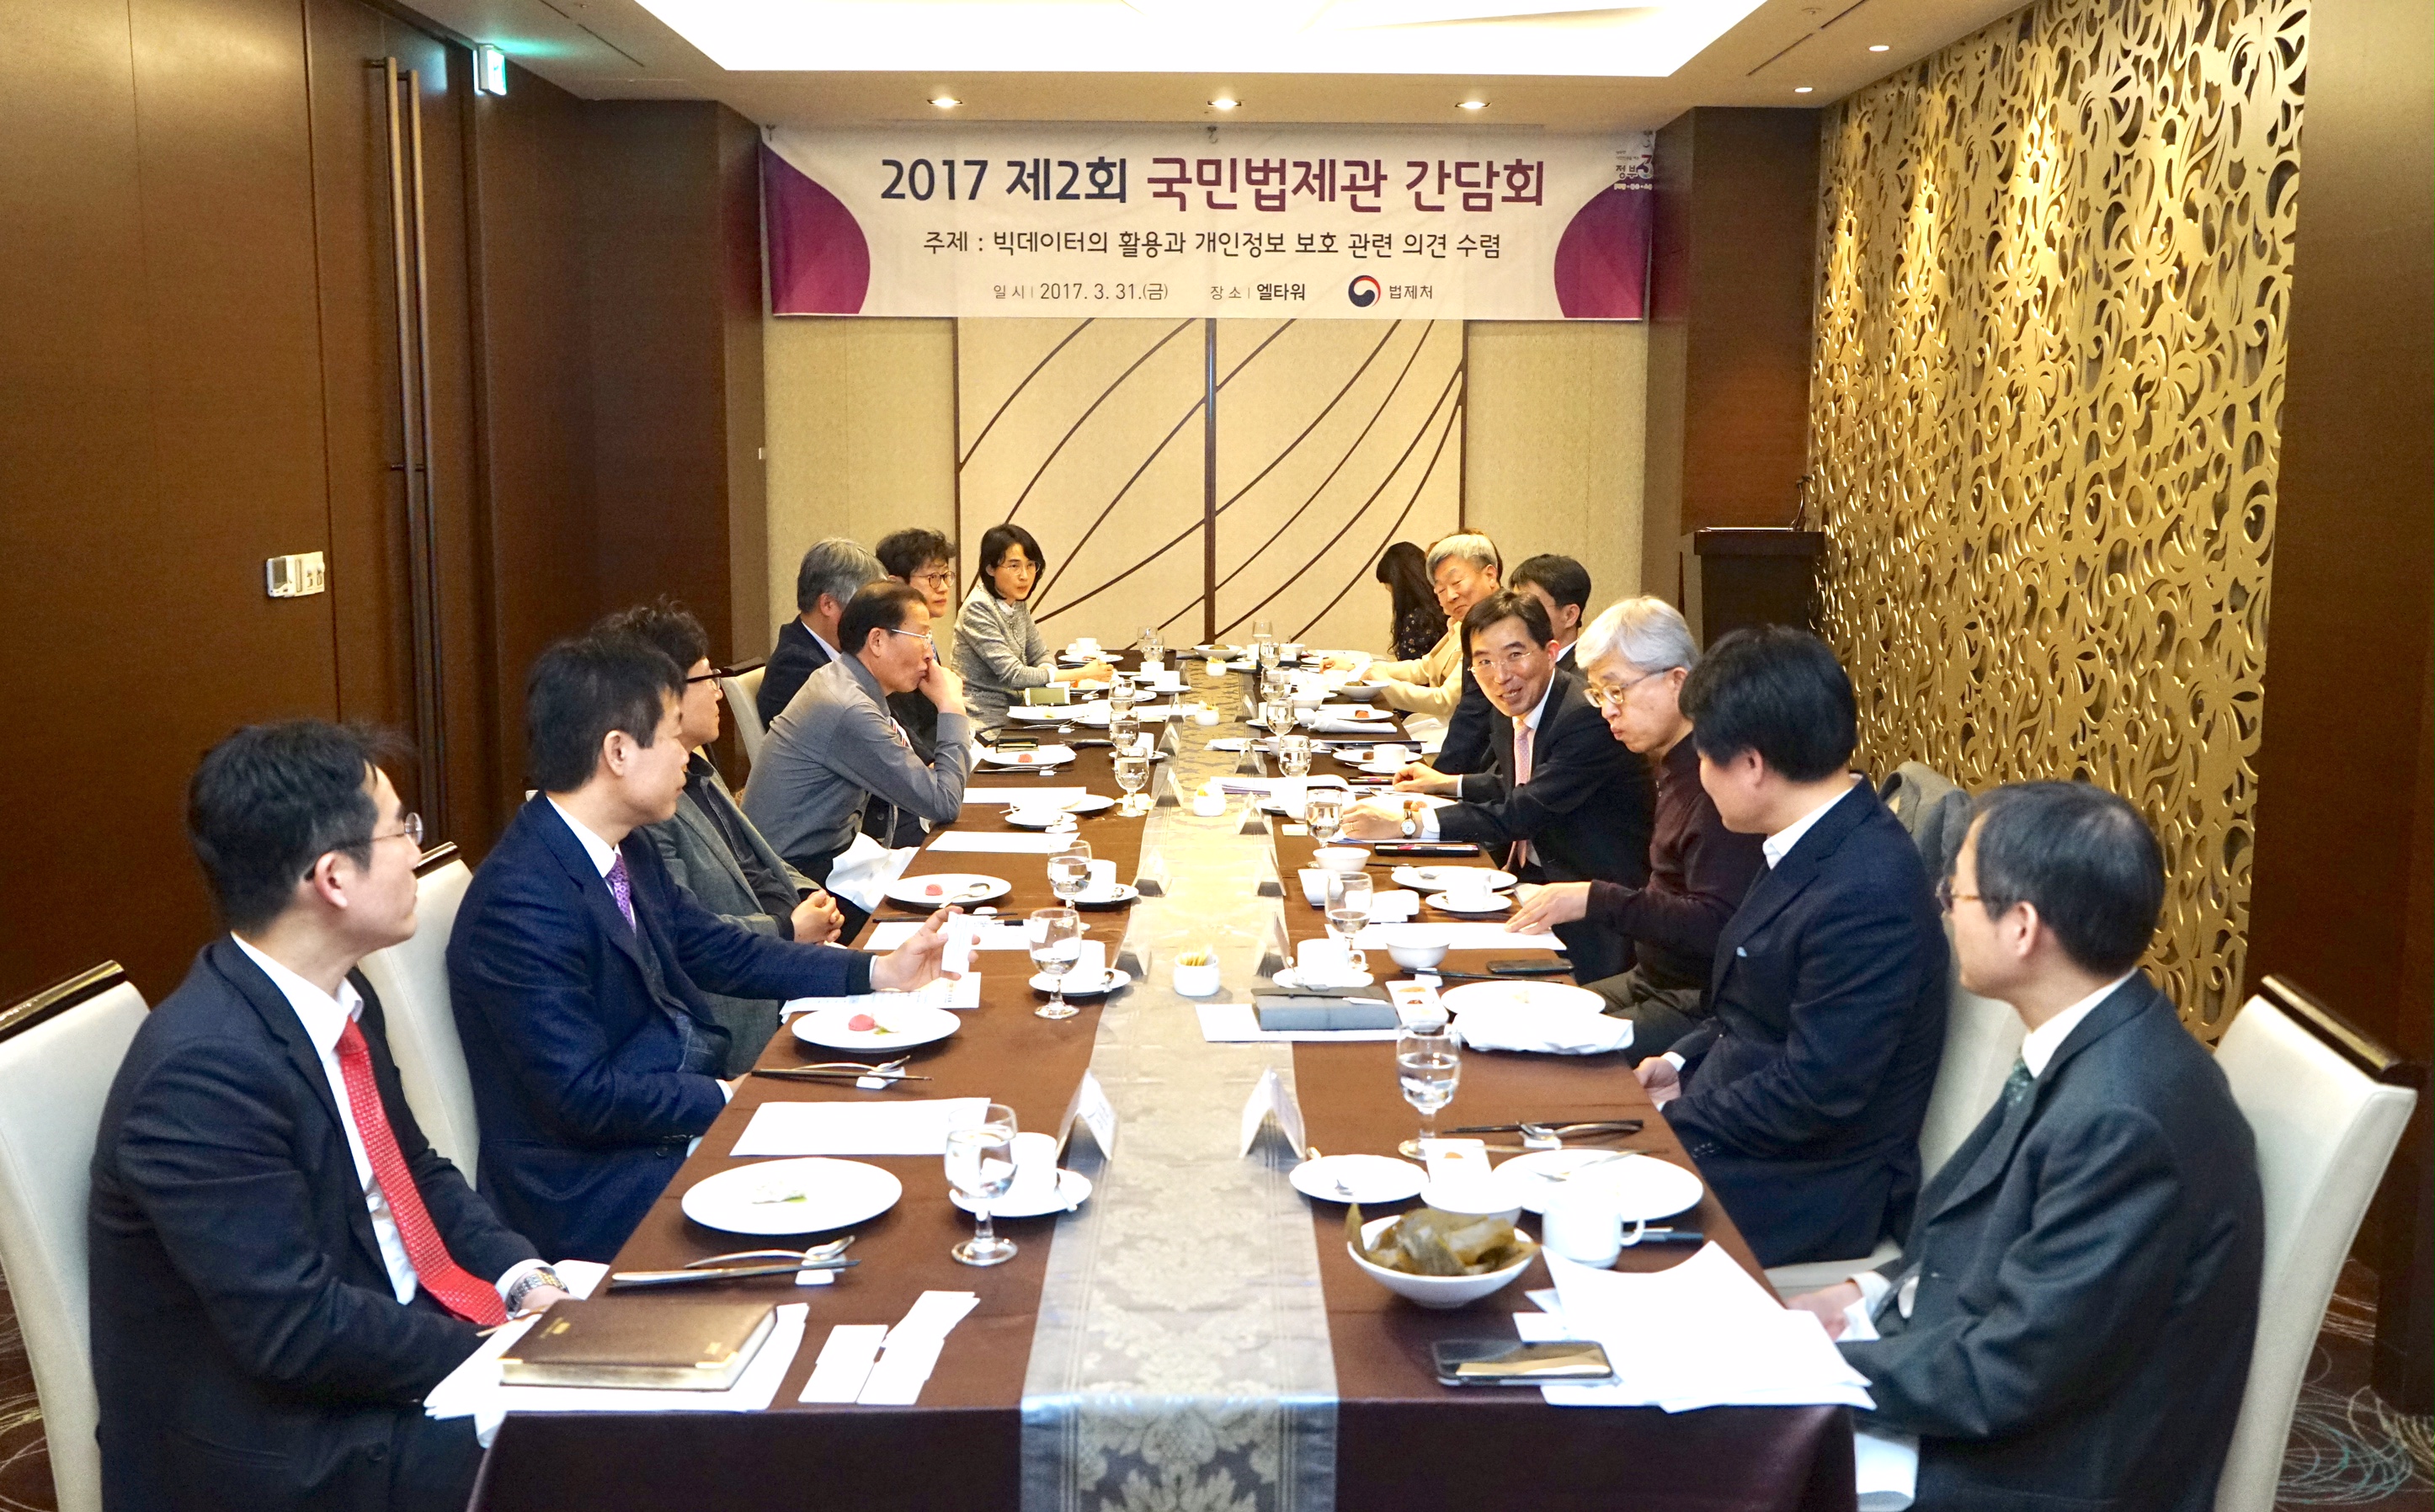 국민법제관 간담회 개최 사진2